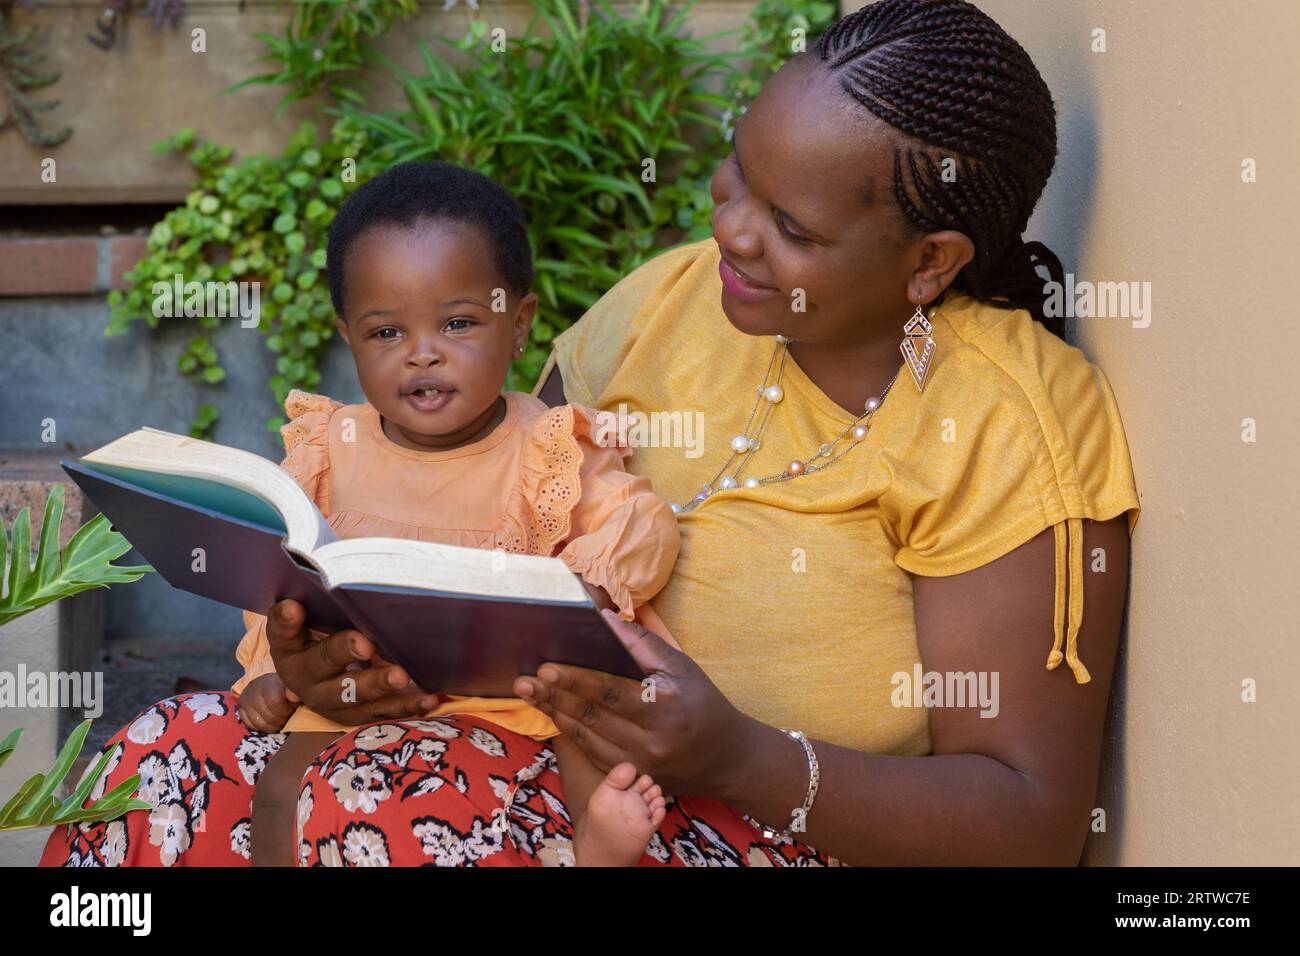 Porträt einer jungen schwarzen Mutter, die ihrer kleinen Tochter vorliest, die auf ihrem Schoß sitzt Stockfoto